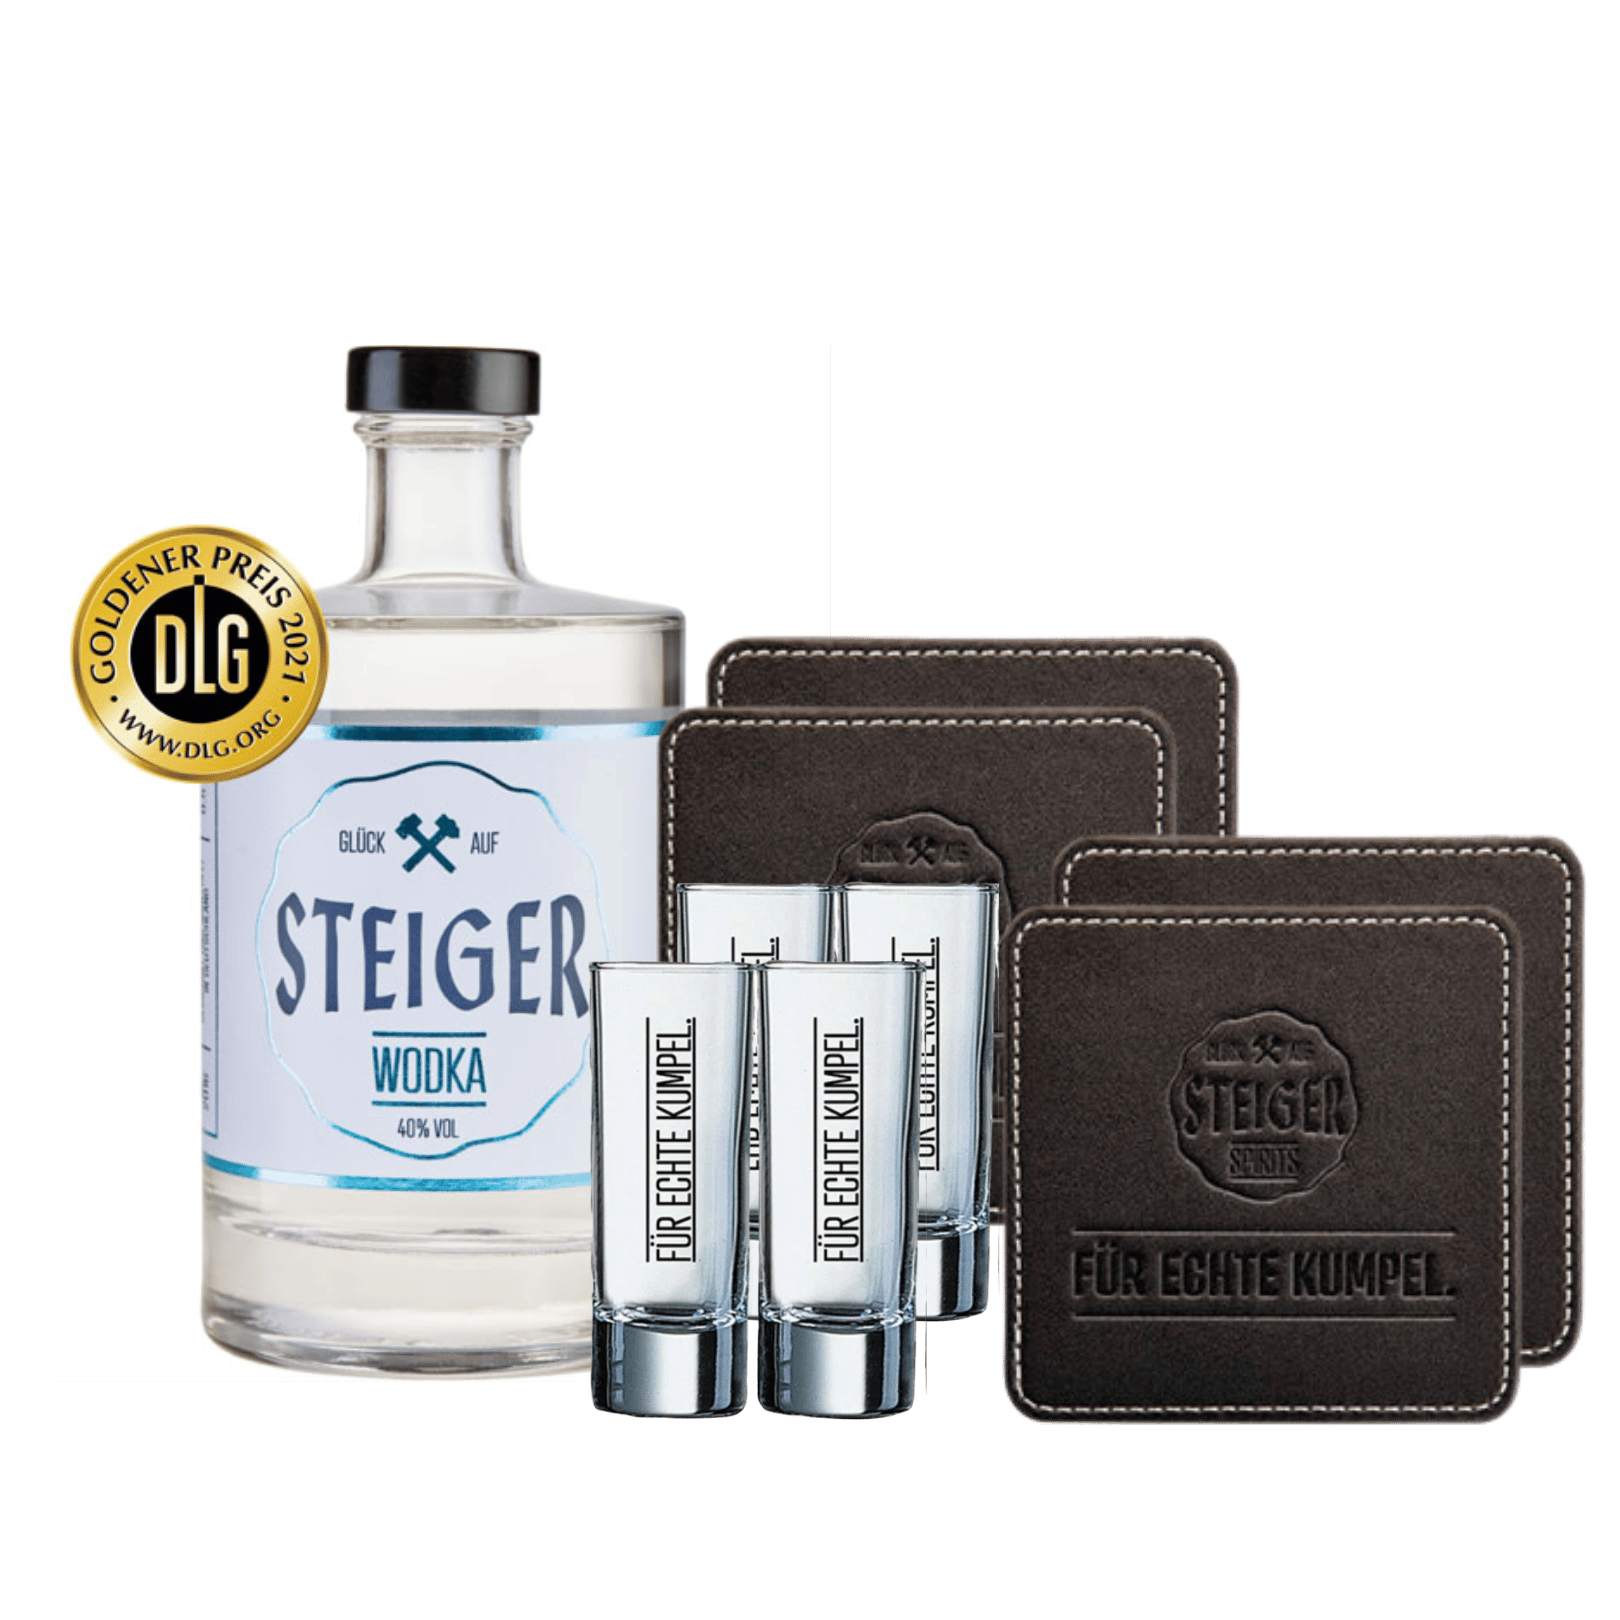 Steiger Wodka inkl. Gläser und Untersetzer